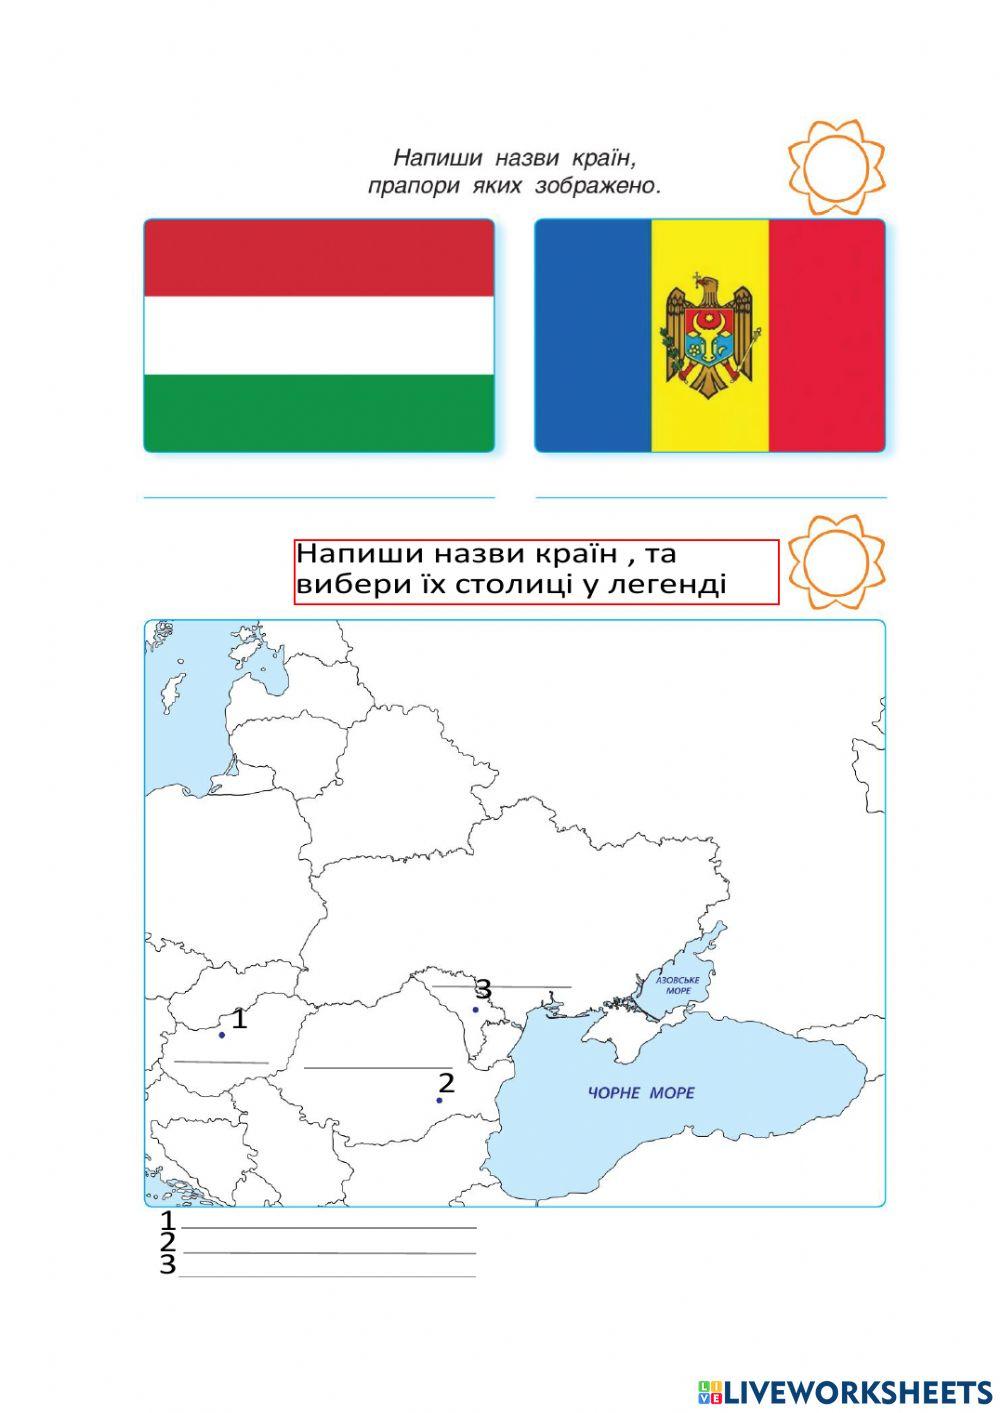 Географія Румунії, Угорщини, Молдови